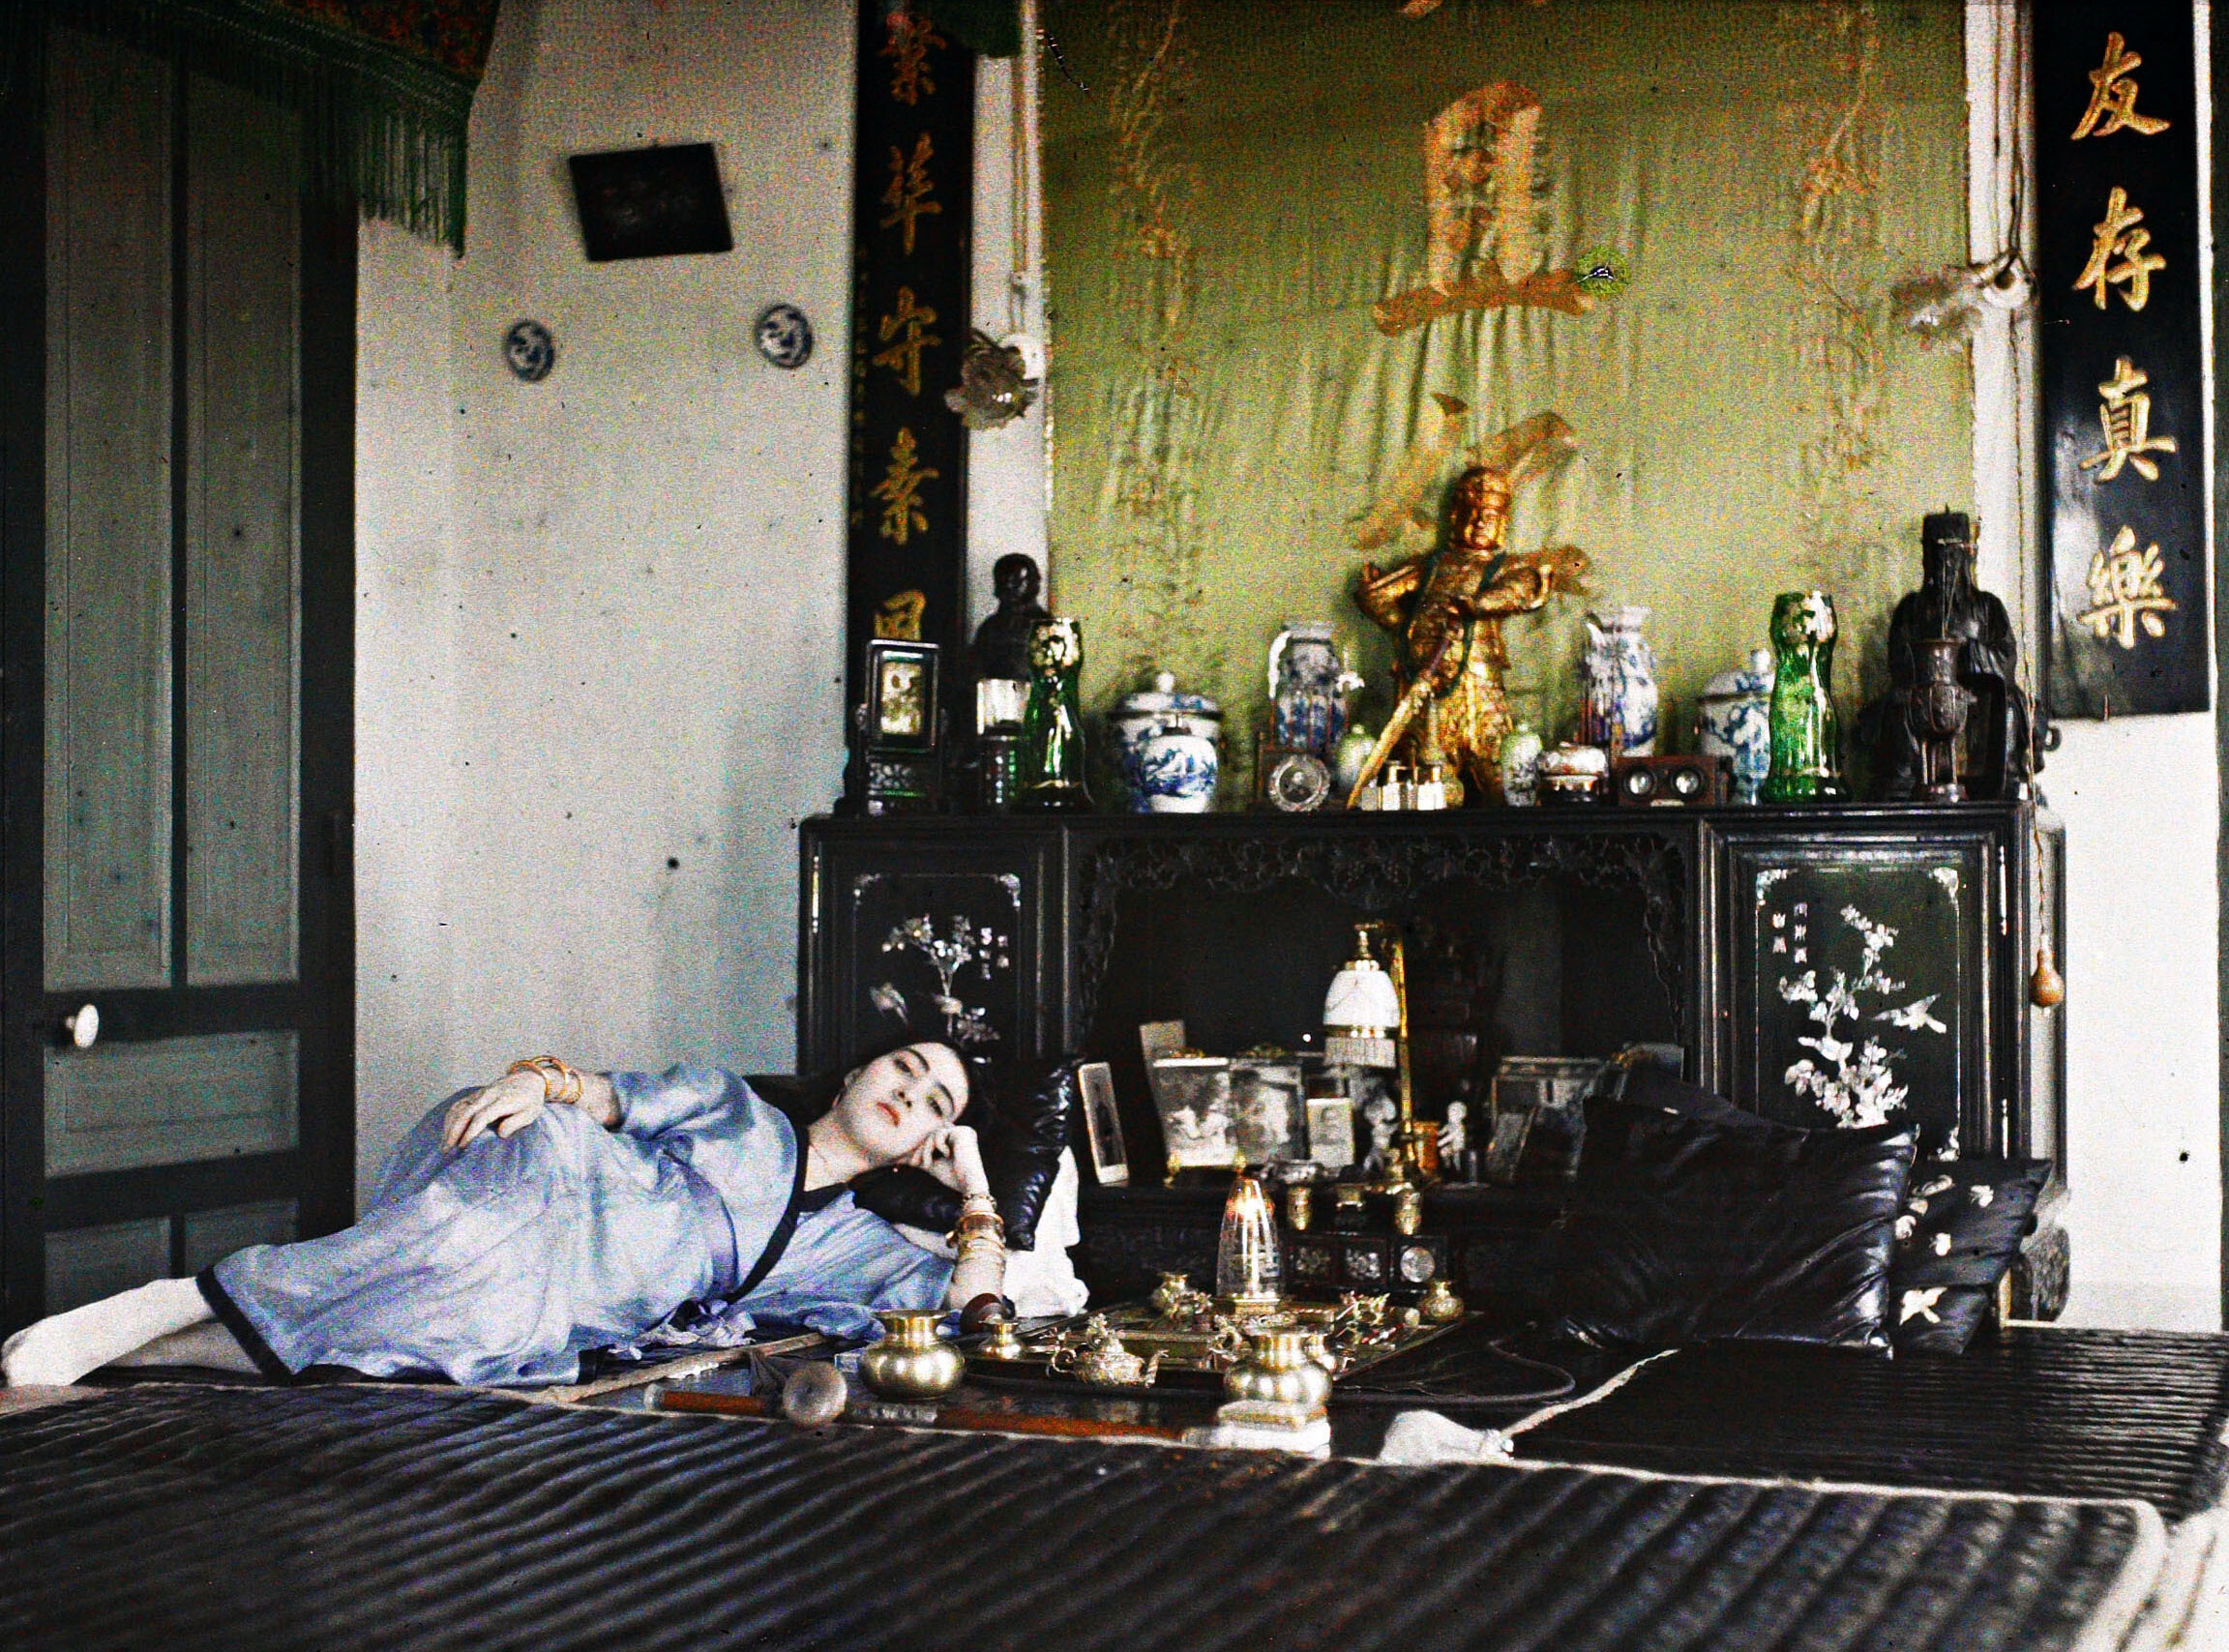 Ханой, Тонкин, Индокитай. Курильщица опиума из богатого класса, 1915 год, автор Леон Бизи (автохром)